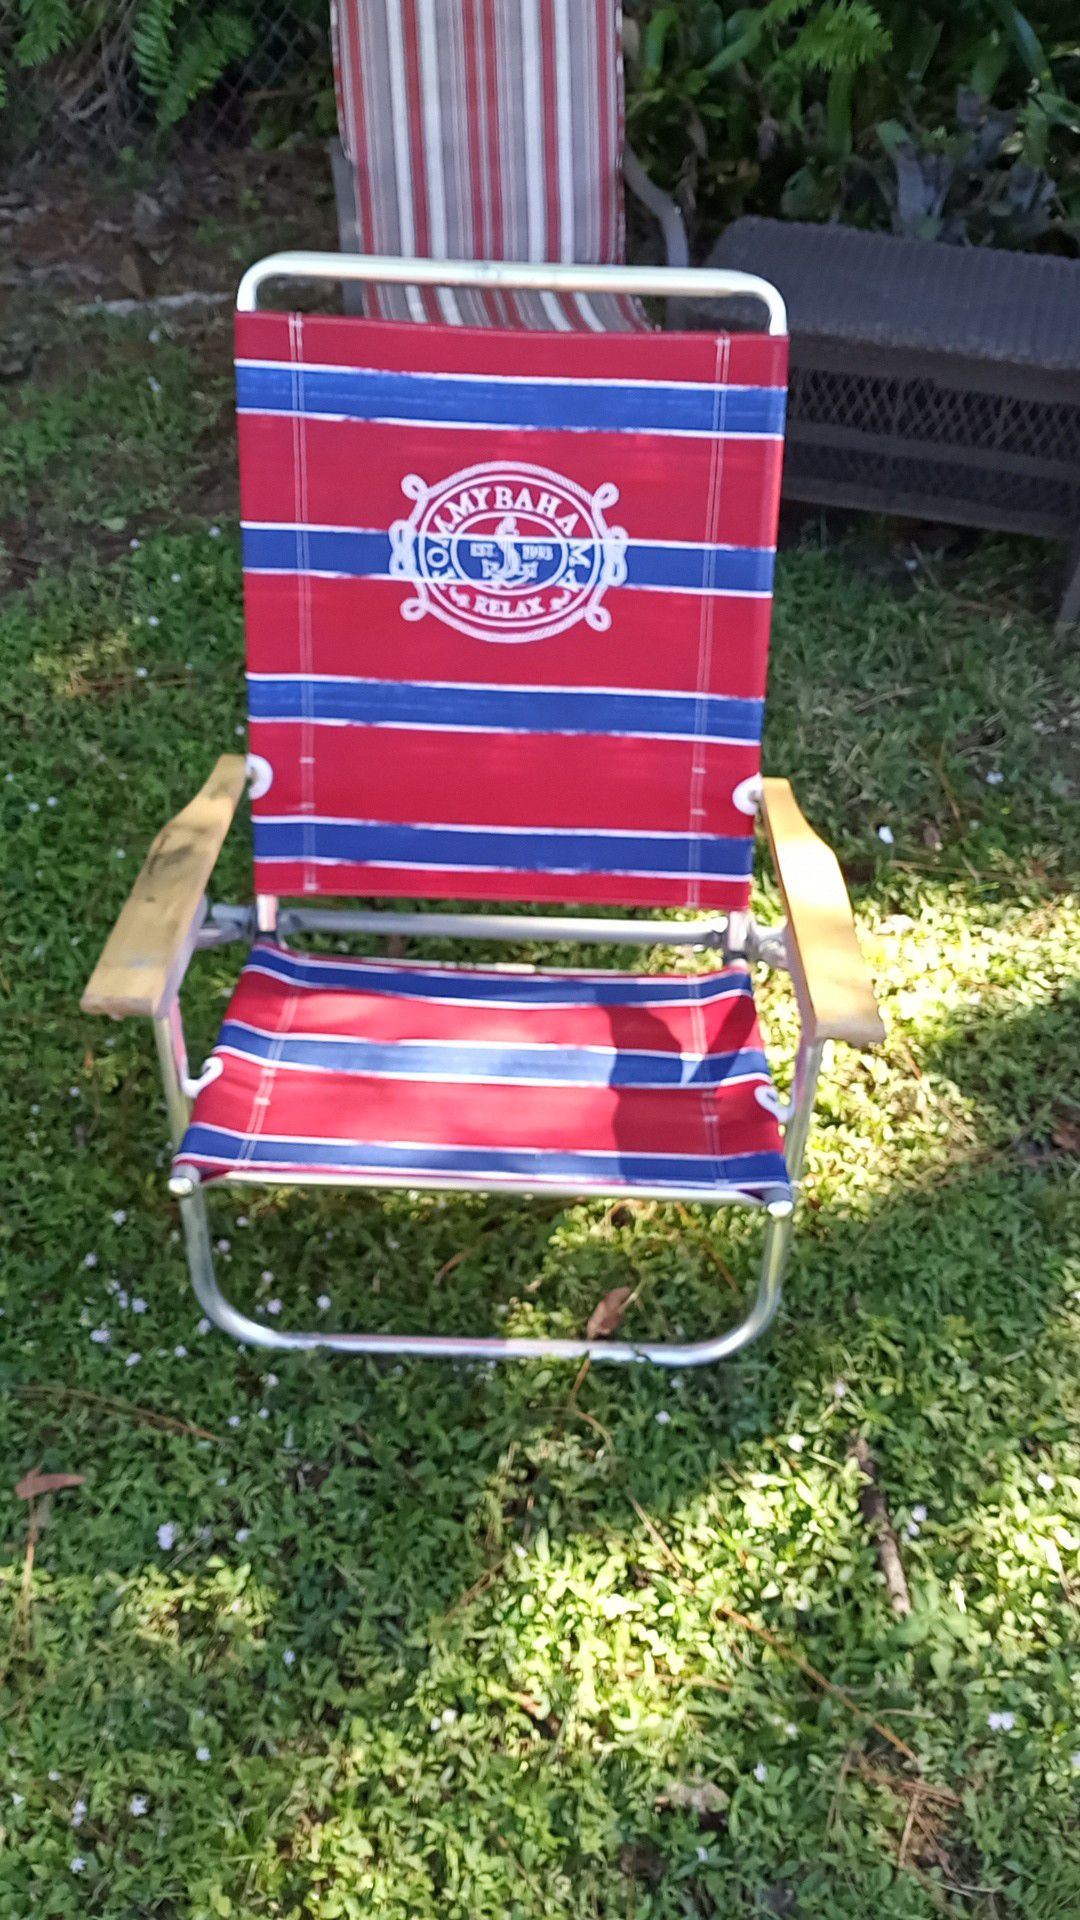 Tommy Bahama beach chair